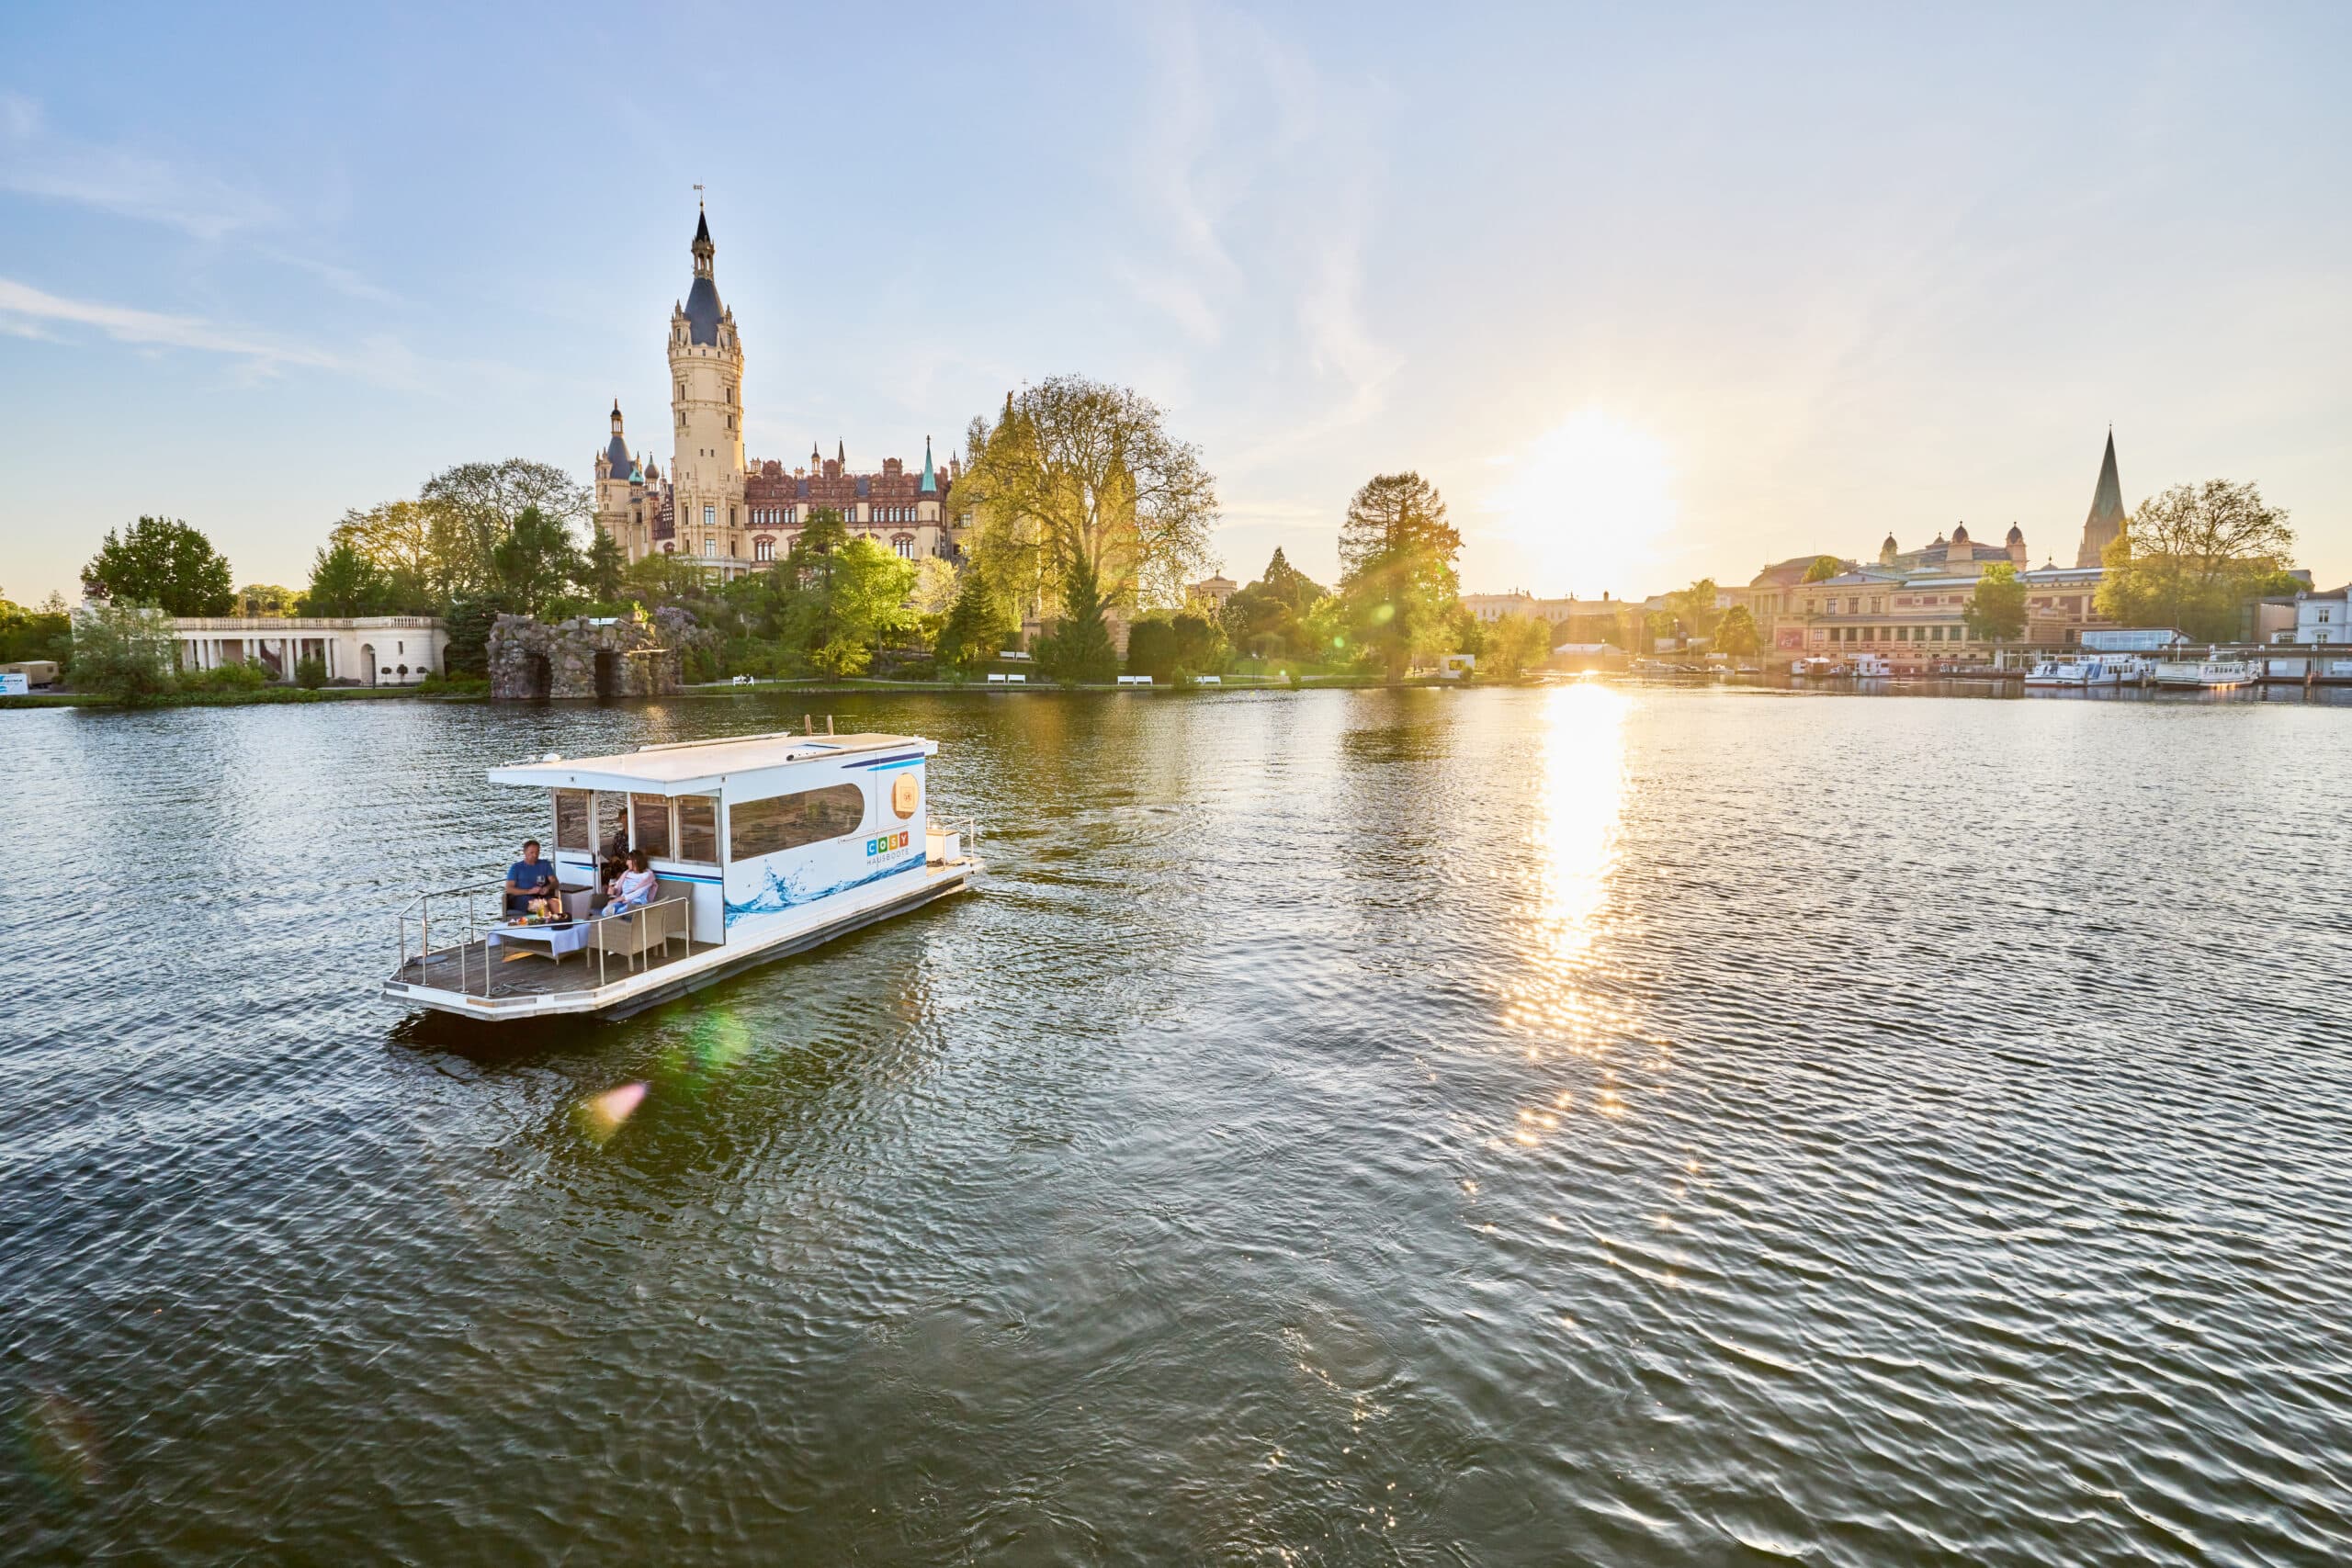 COSY Hausboote Schwerin, Stadtmarketing Schwerin, Fotograf Oliver Borchert, Hausboot auf dem Wasser fahrend, Schweriner See, Schweriner Schloss